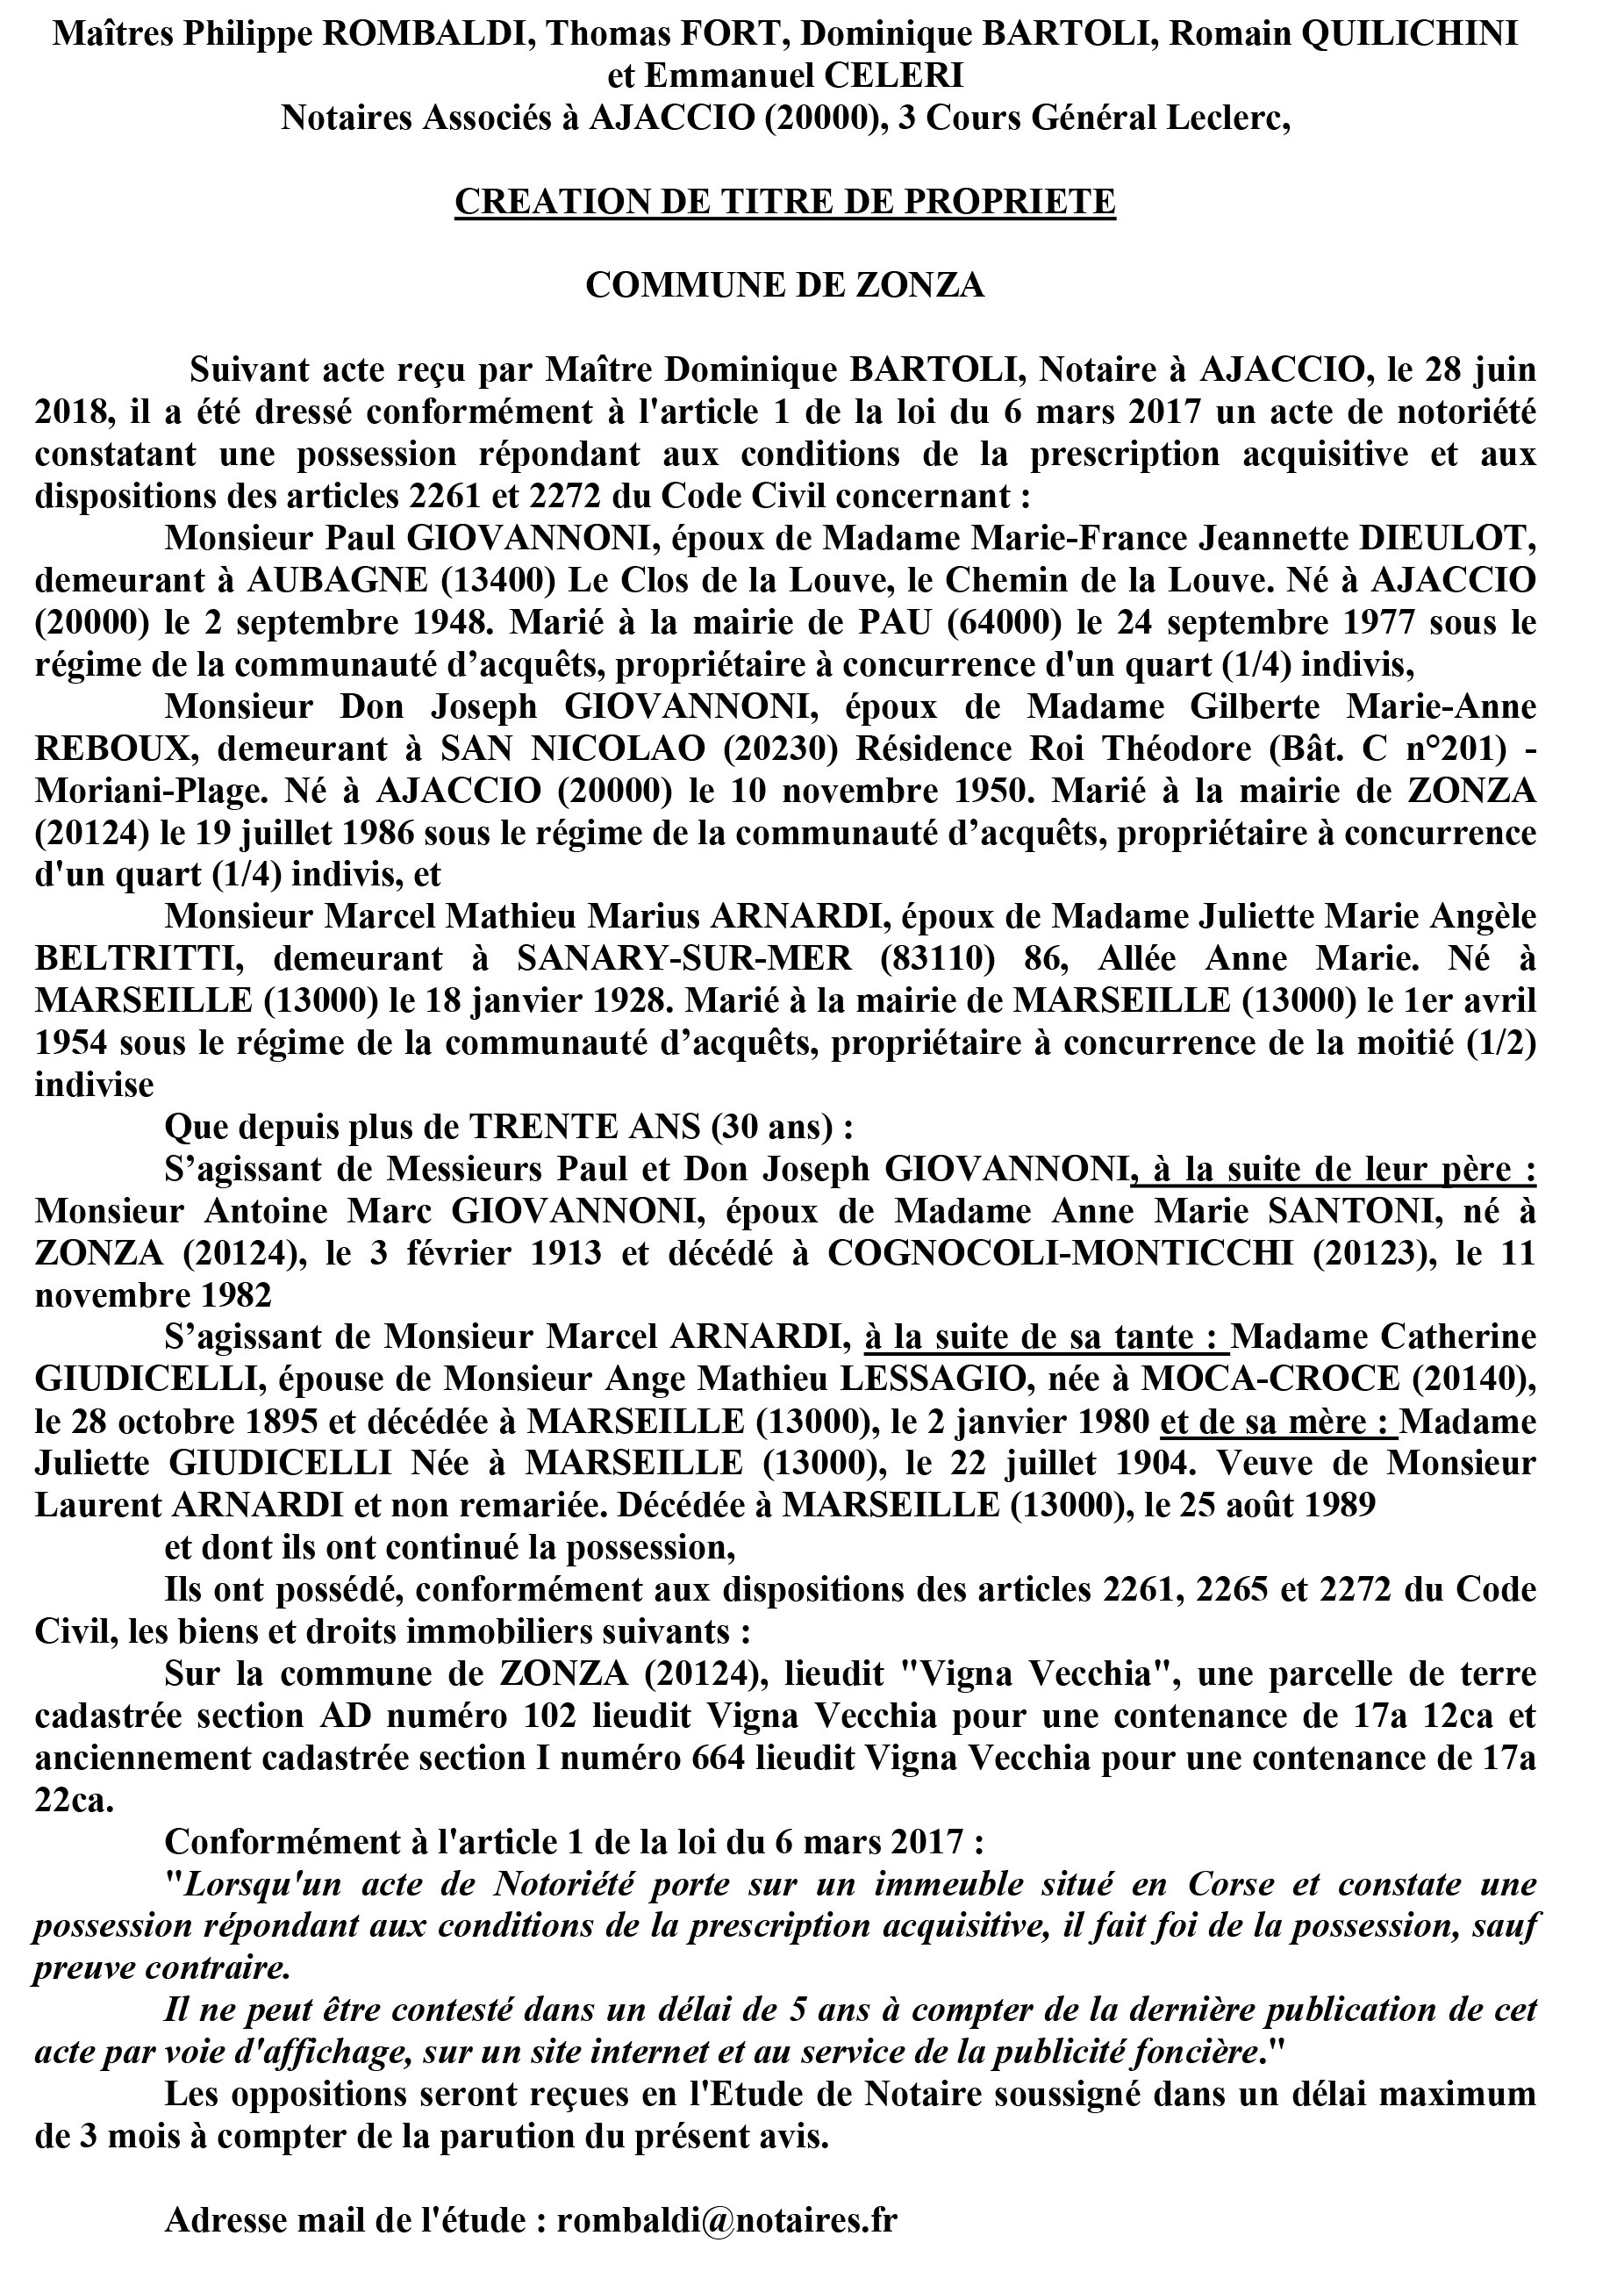 Avis de création de titre de propriété - commune de Zonza (Corse du Sud)